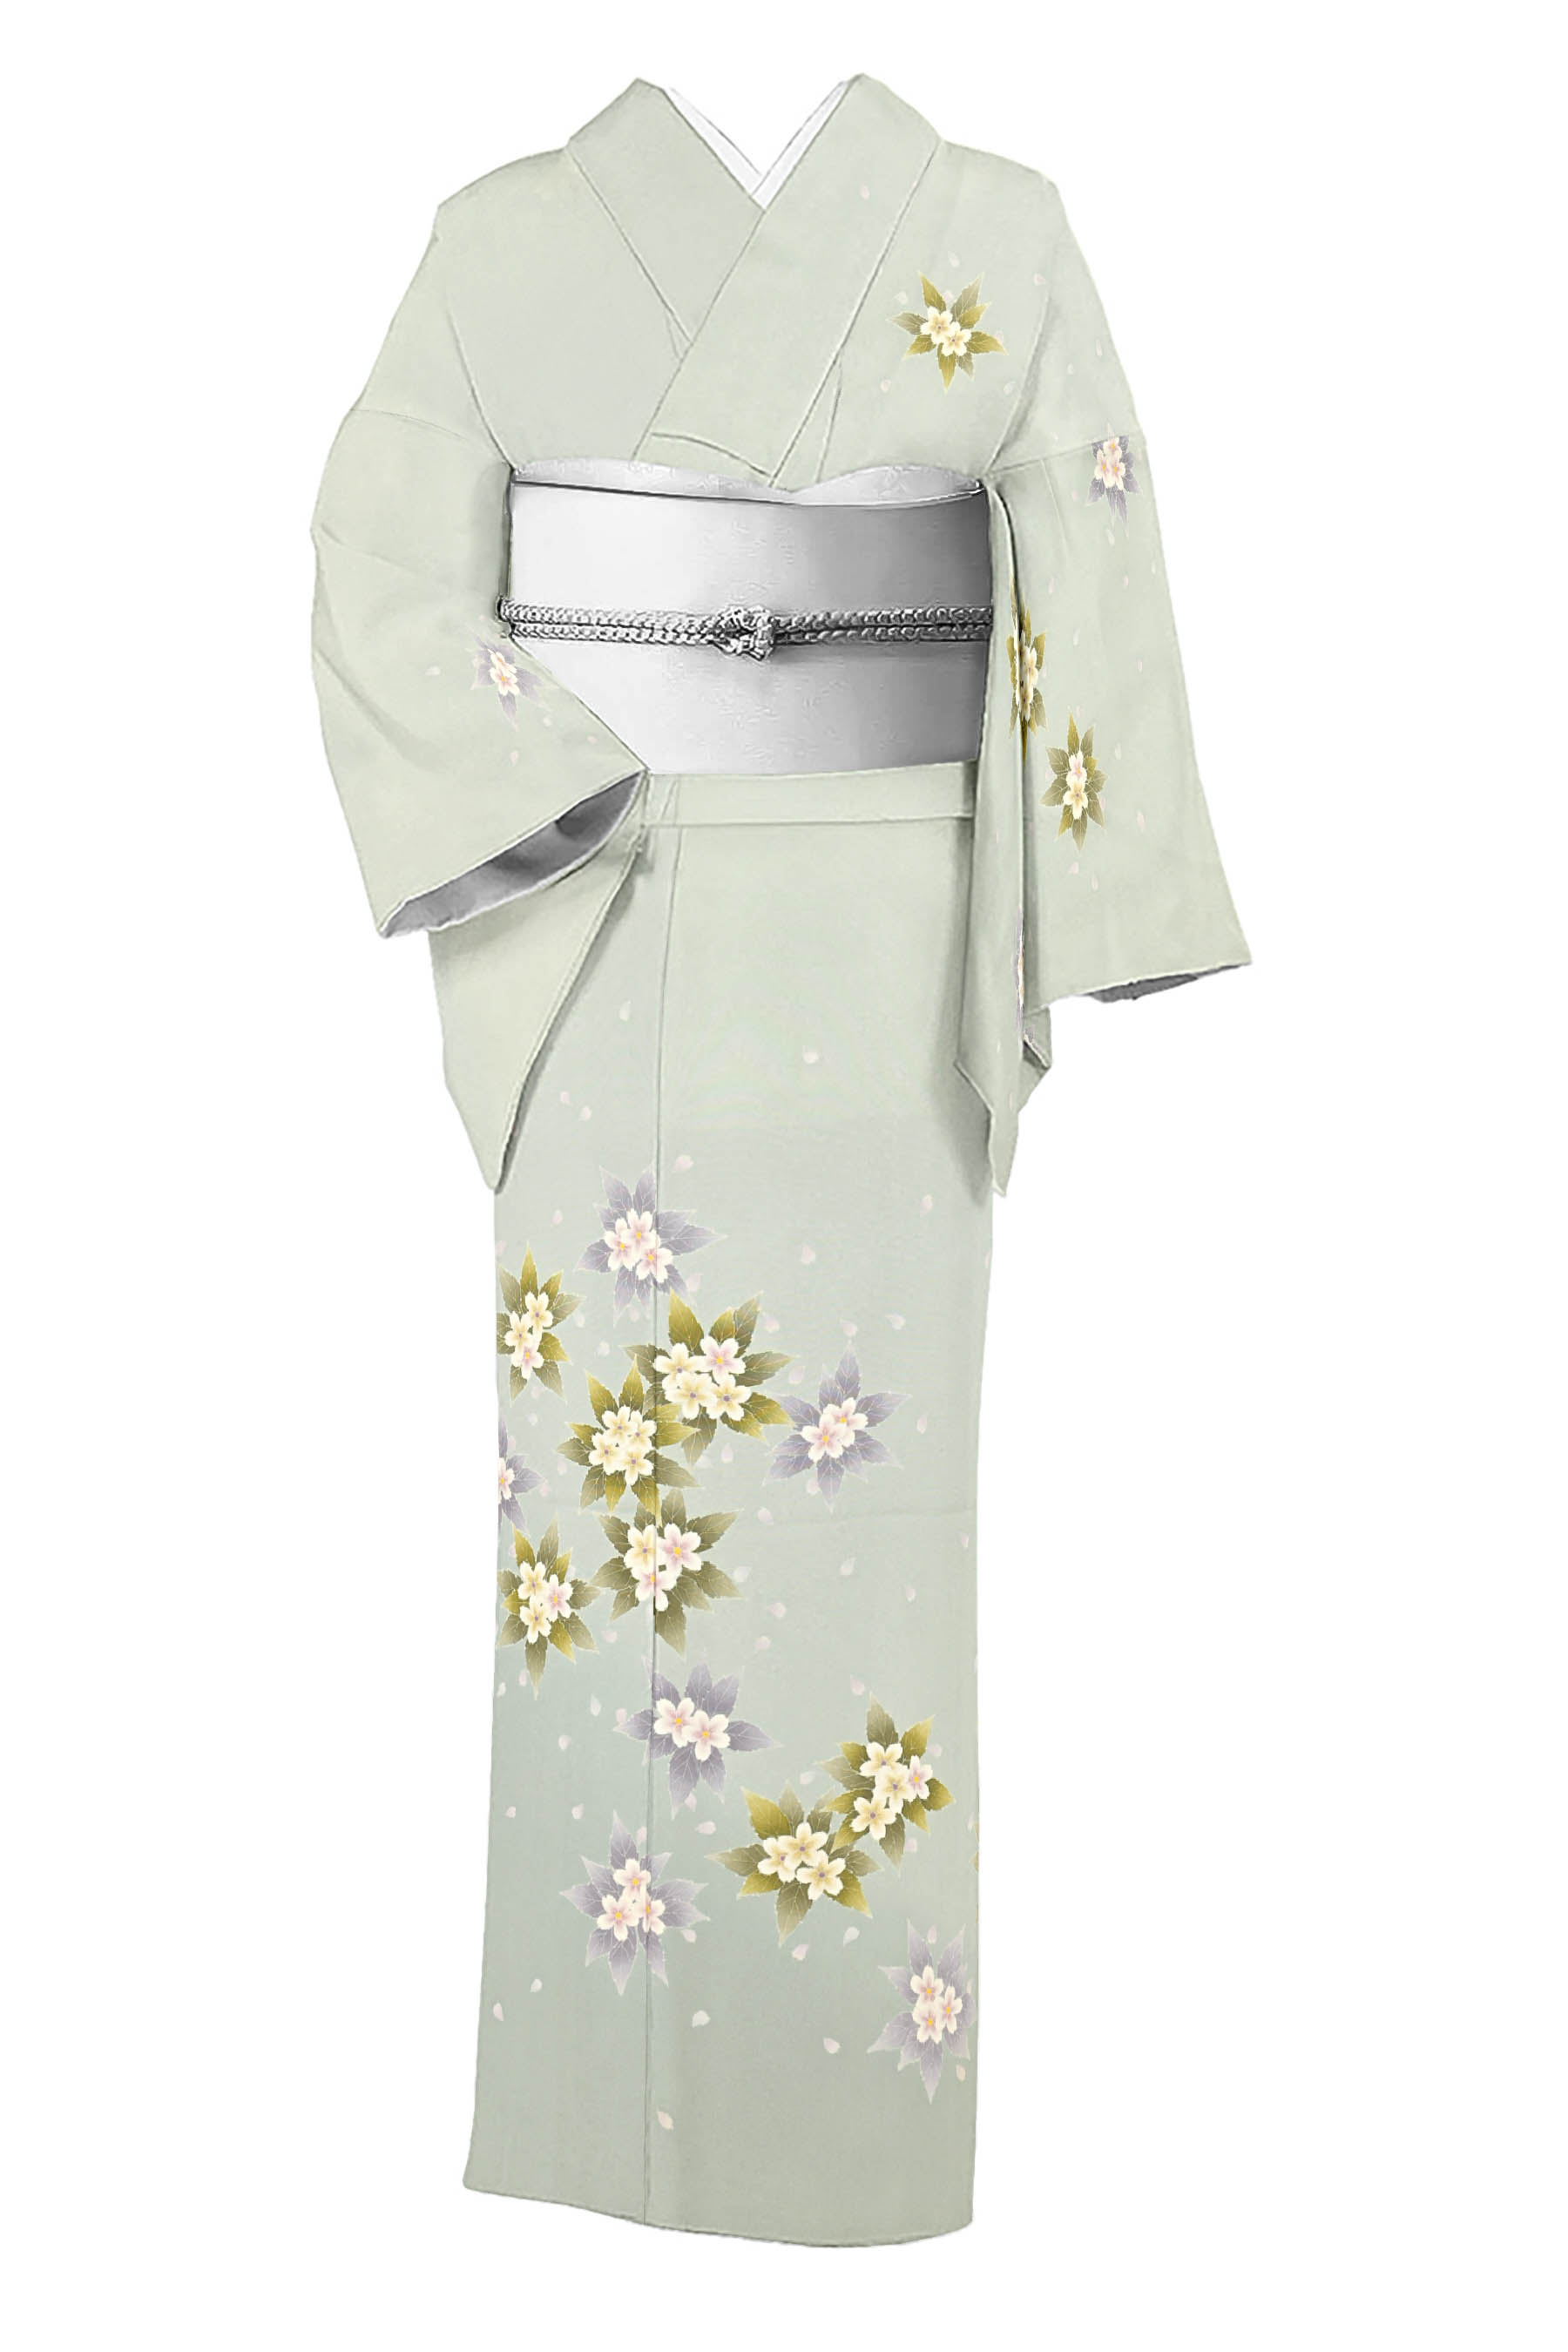 新納知英】 特選本加賀友禅訪問着 伝統的工芸品 「山桜」 風雅な魅力